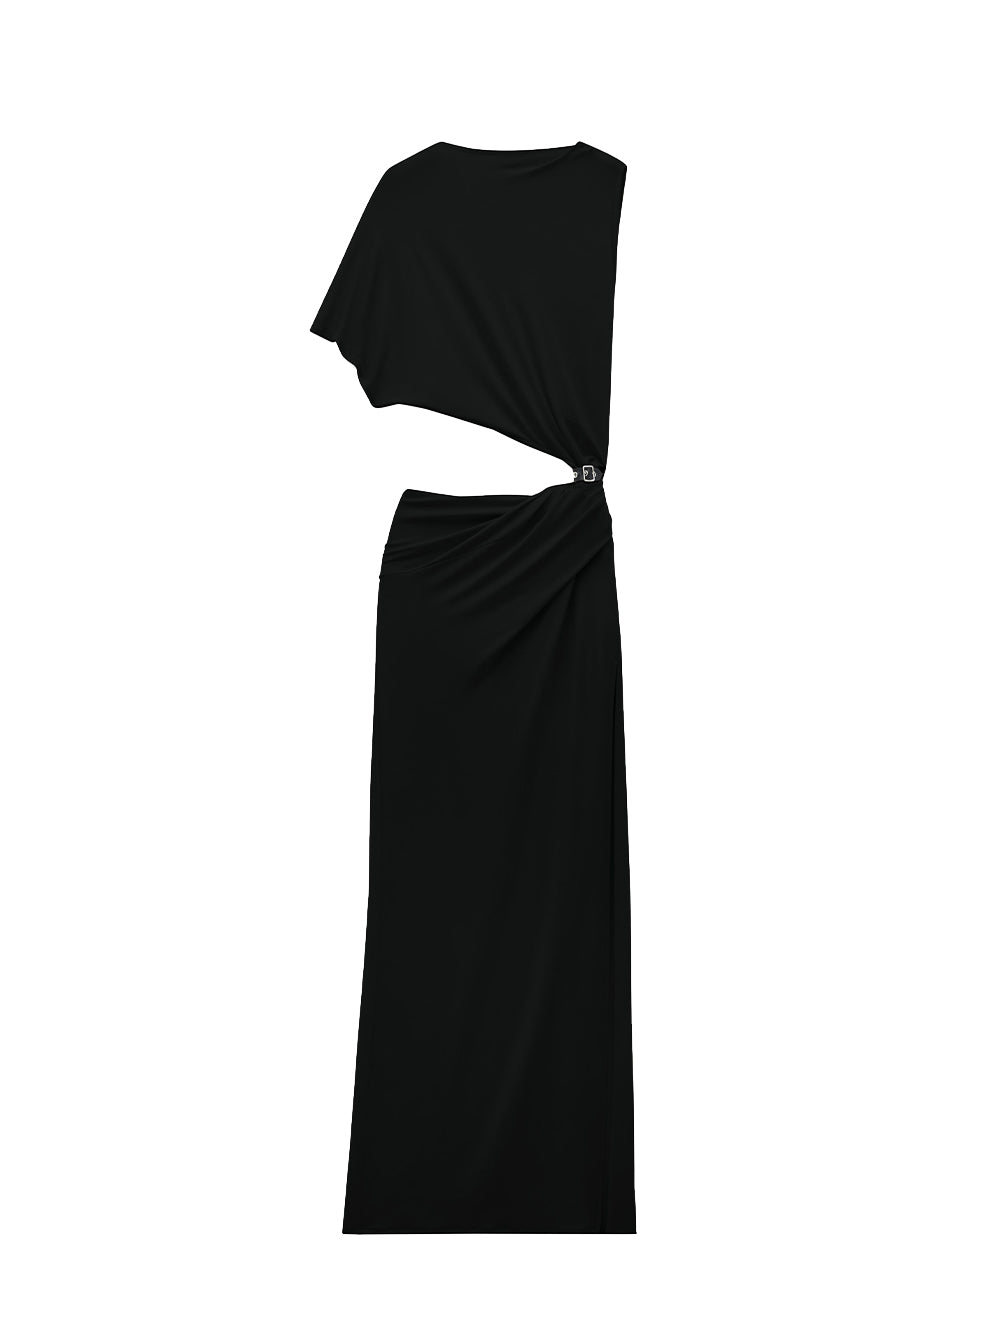 One Shoulder Crepe Long Dress (Black)